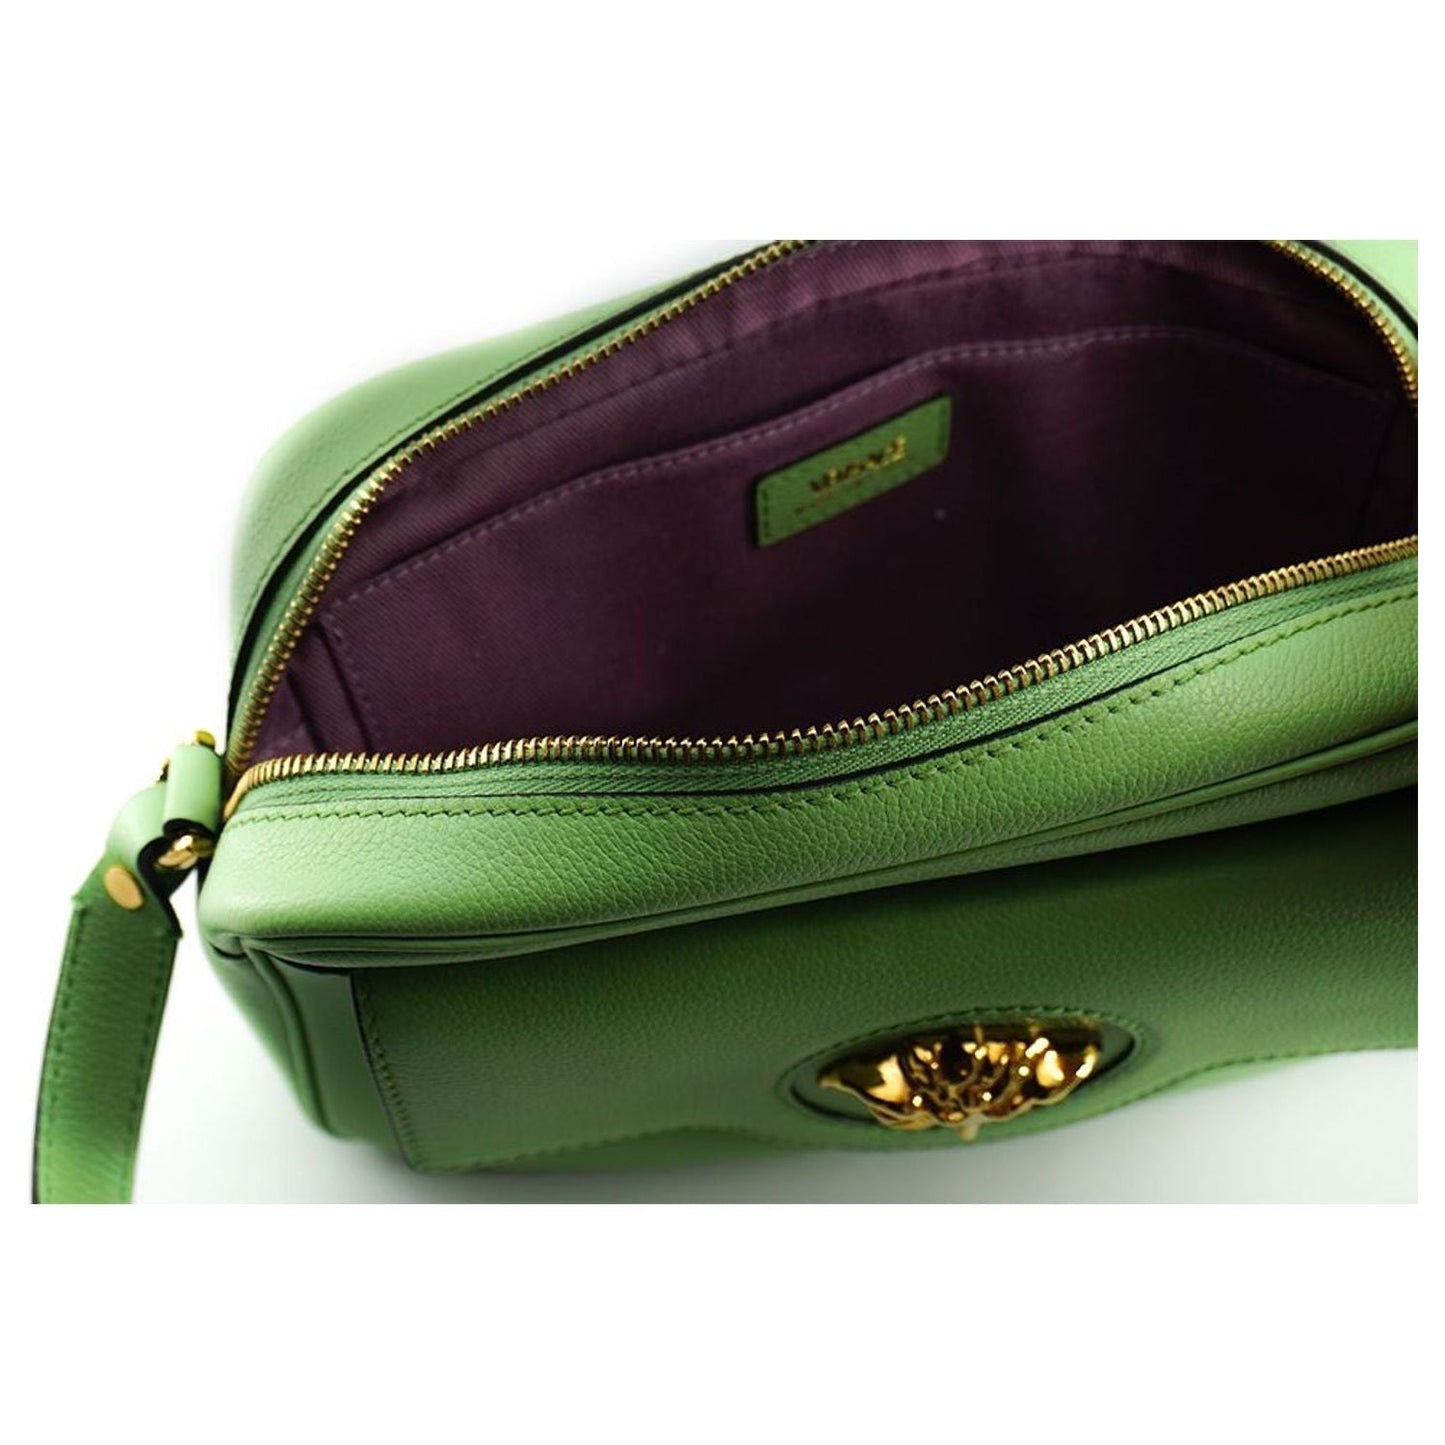 Versace Elegant Mint Green Leather Camera Case Bag Crossbody Bag mint-green-calf-leather-camera-shoulder-bag